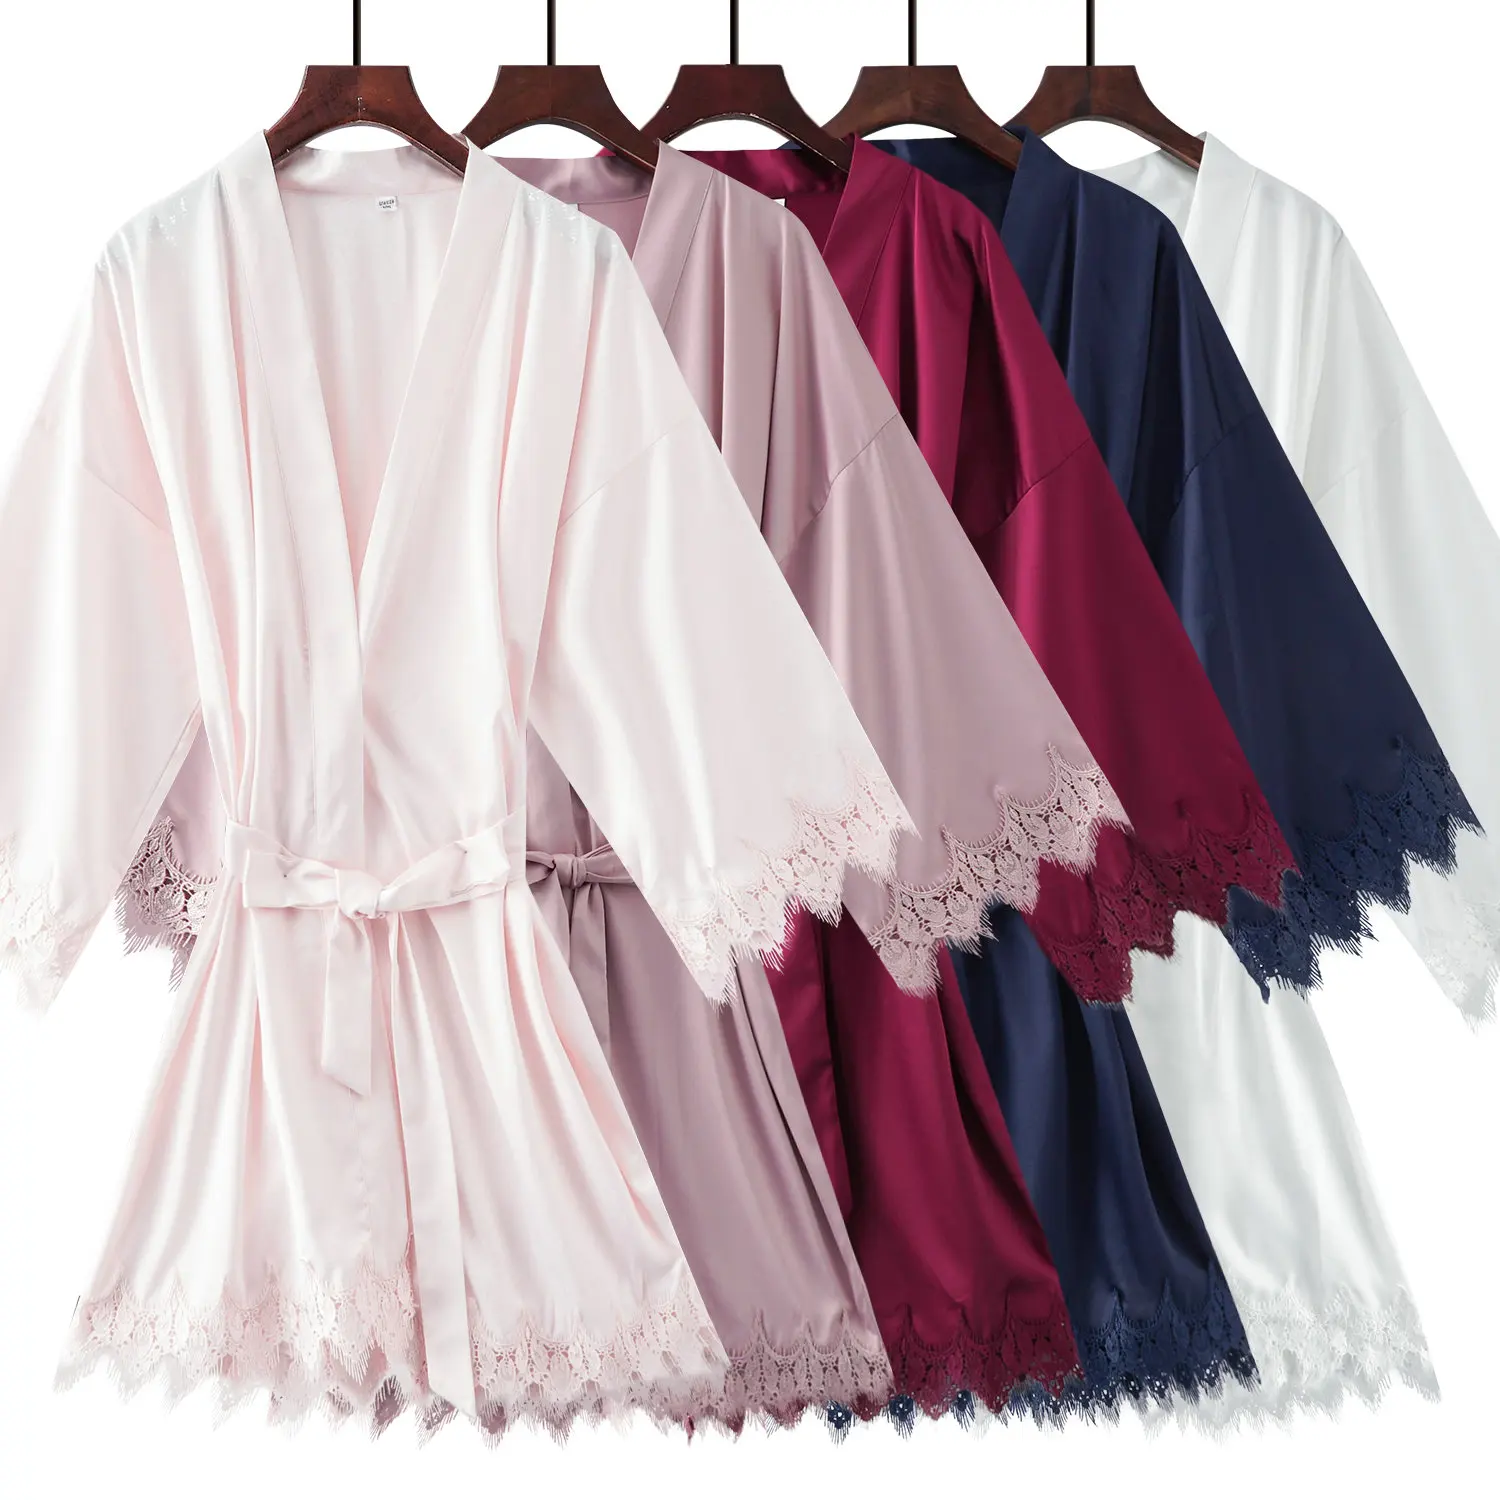 YUXINBRIDAL матовый атласный кружевной халат с отделкой свадебное платье невесты кимоно для невесты халат атласные халаты для женщин